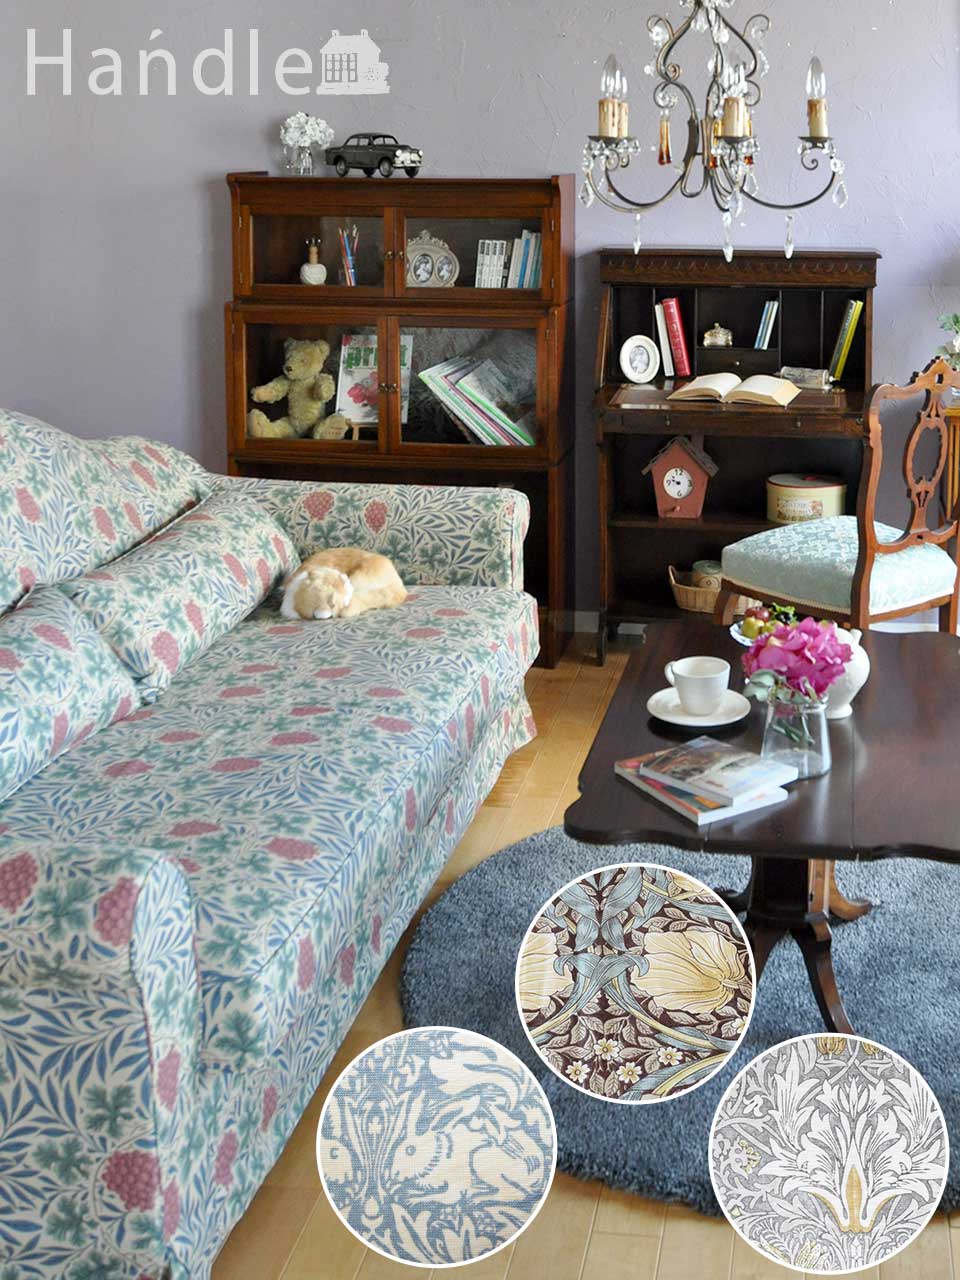 アンティーク家具に似合うソファ、ウィリアムモリスの生地が美しいソファ「Marie（マリー）」 (hos-101)